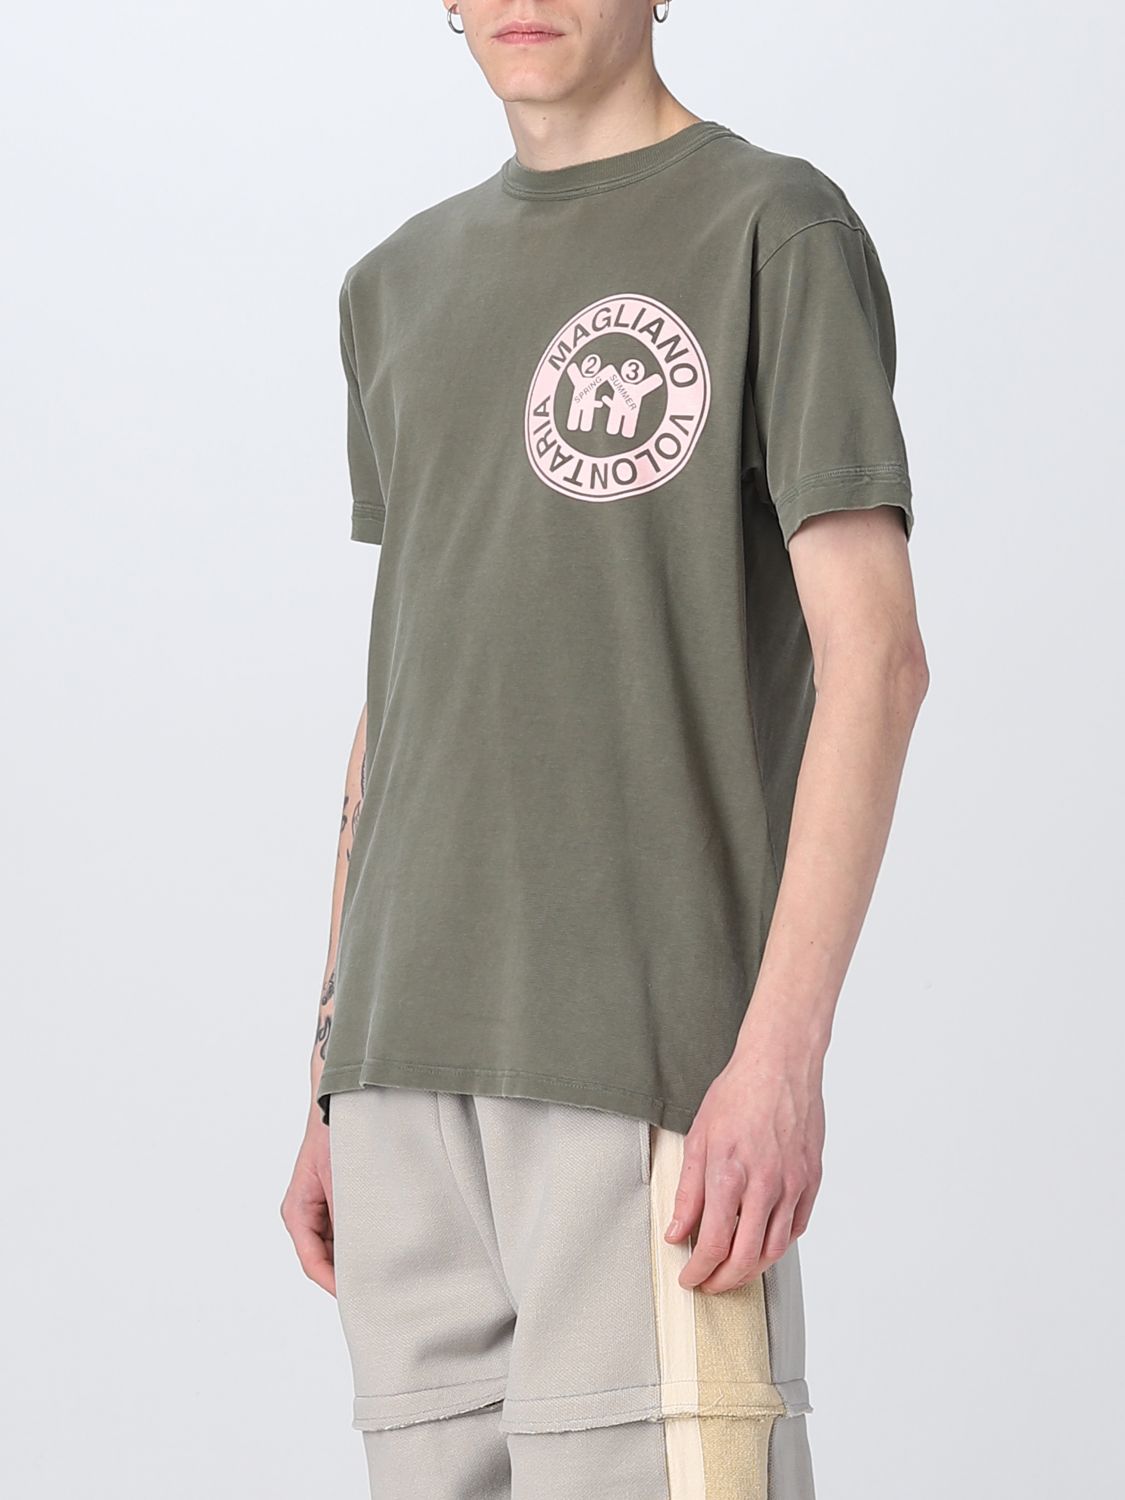 T-shirt Magliano: T-shirt di cotone Magliano con stampa grafica militare 3